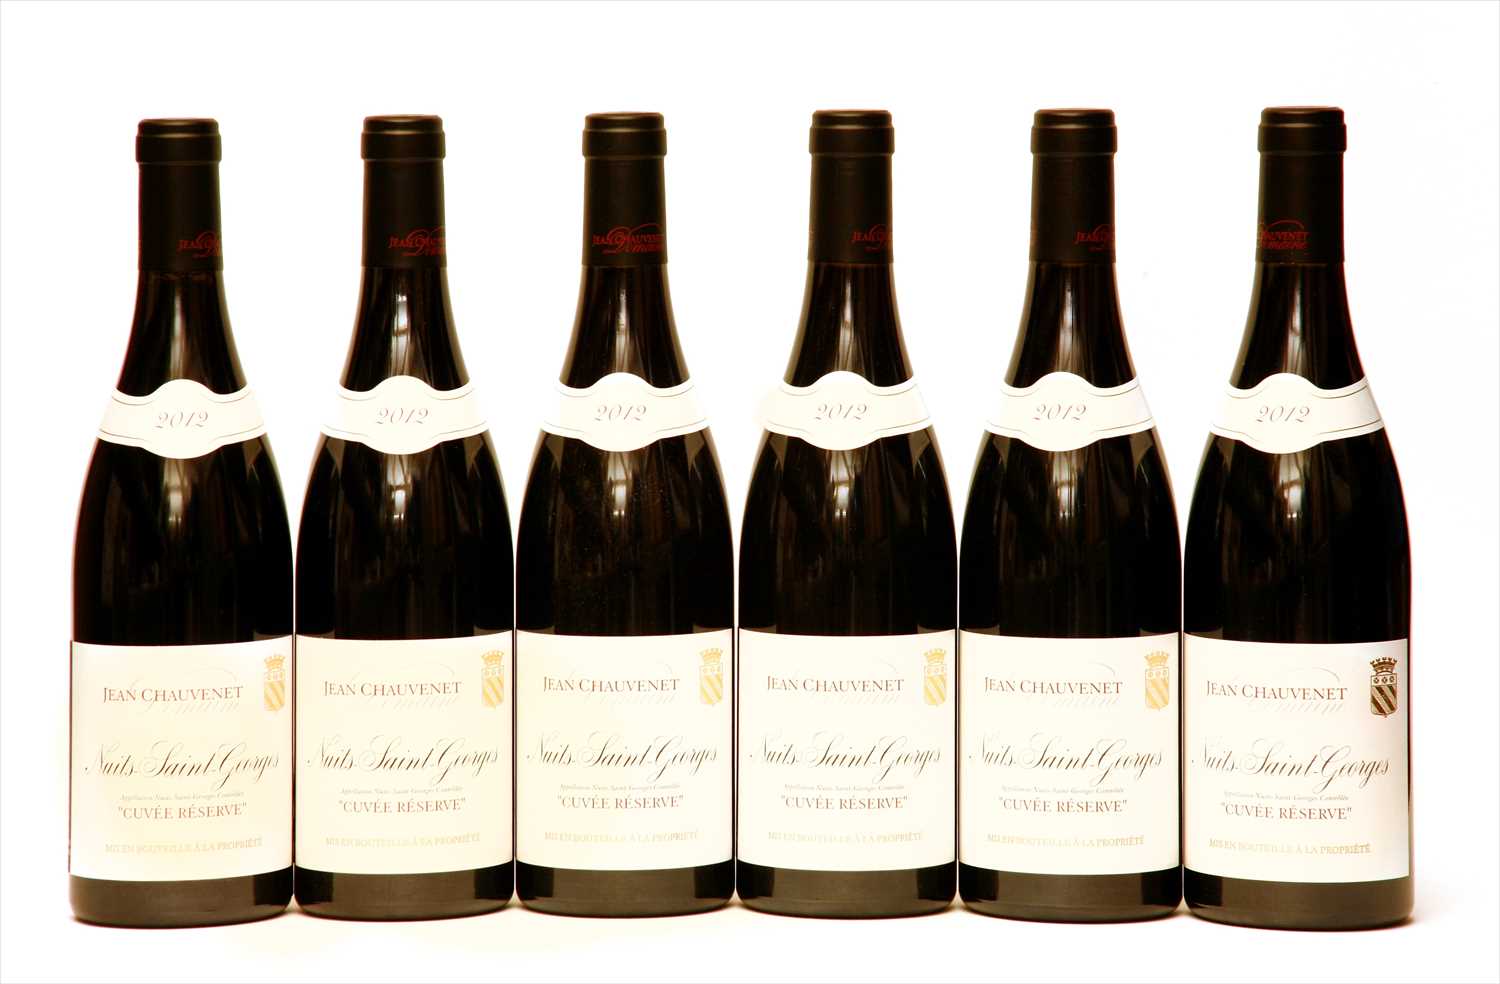 Lot 225 - Domaine Jean Chauvenet, Nuits-Saint-Georges, Cuvée Réserve, 2012, six bottles (boxed)